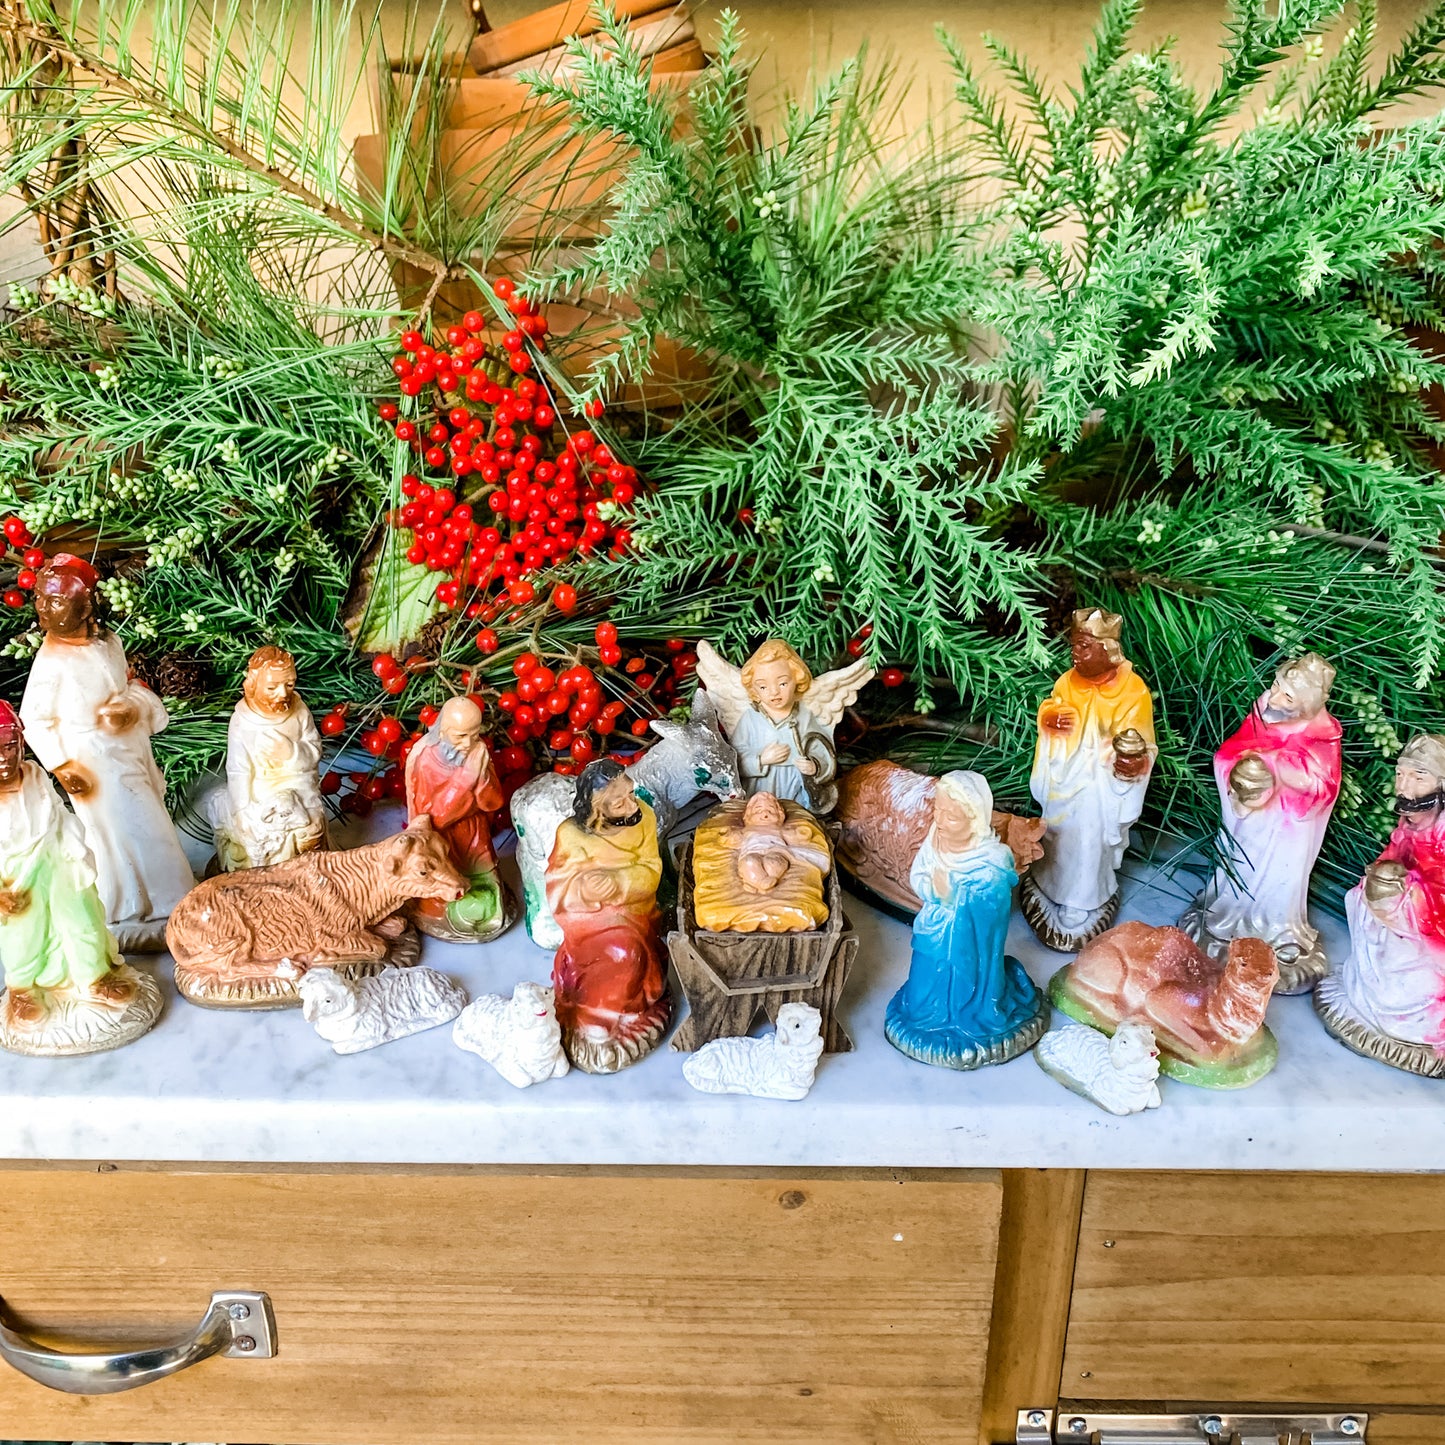 Antique Chalkware Nativity Set -19 pieces